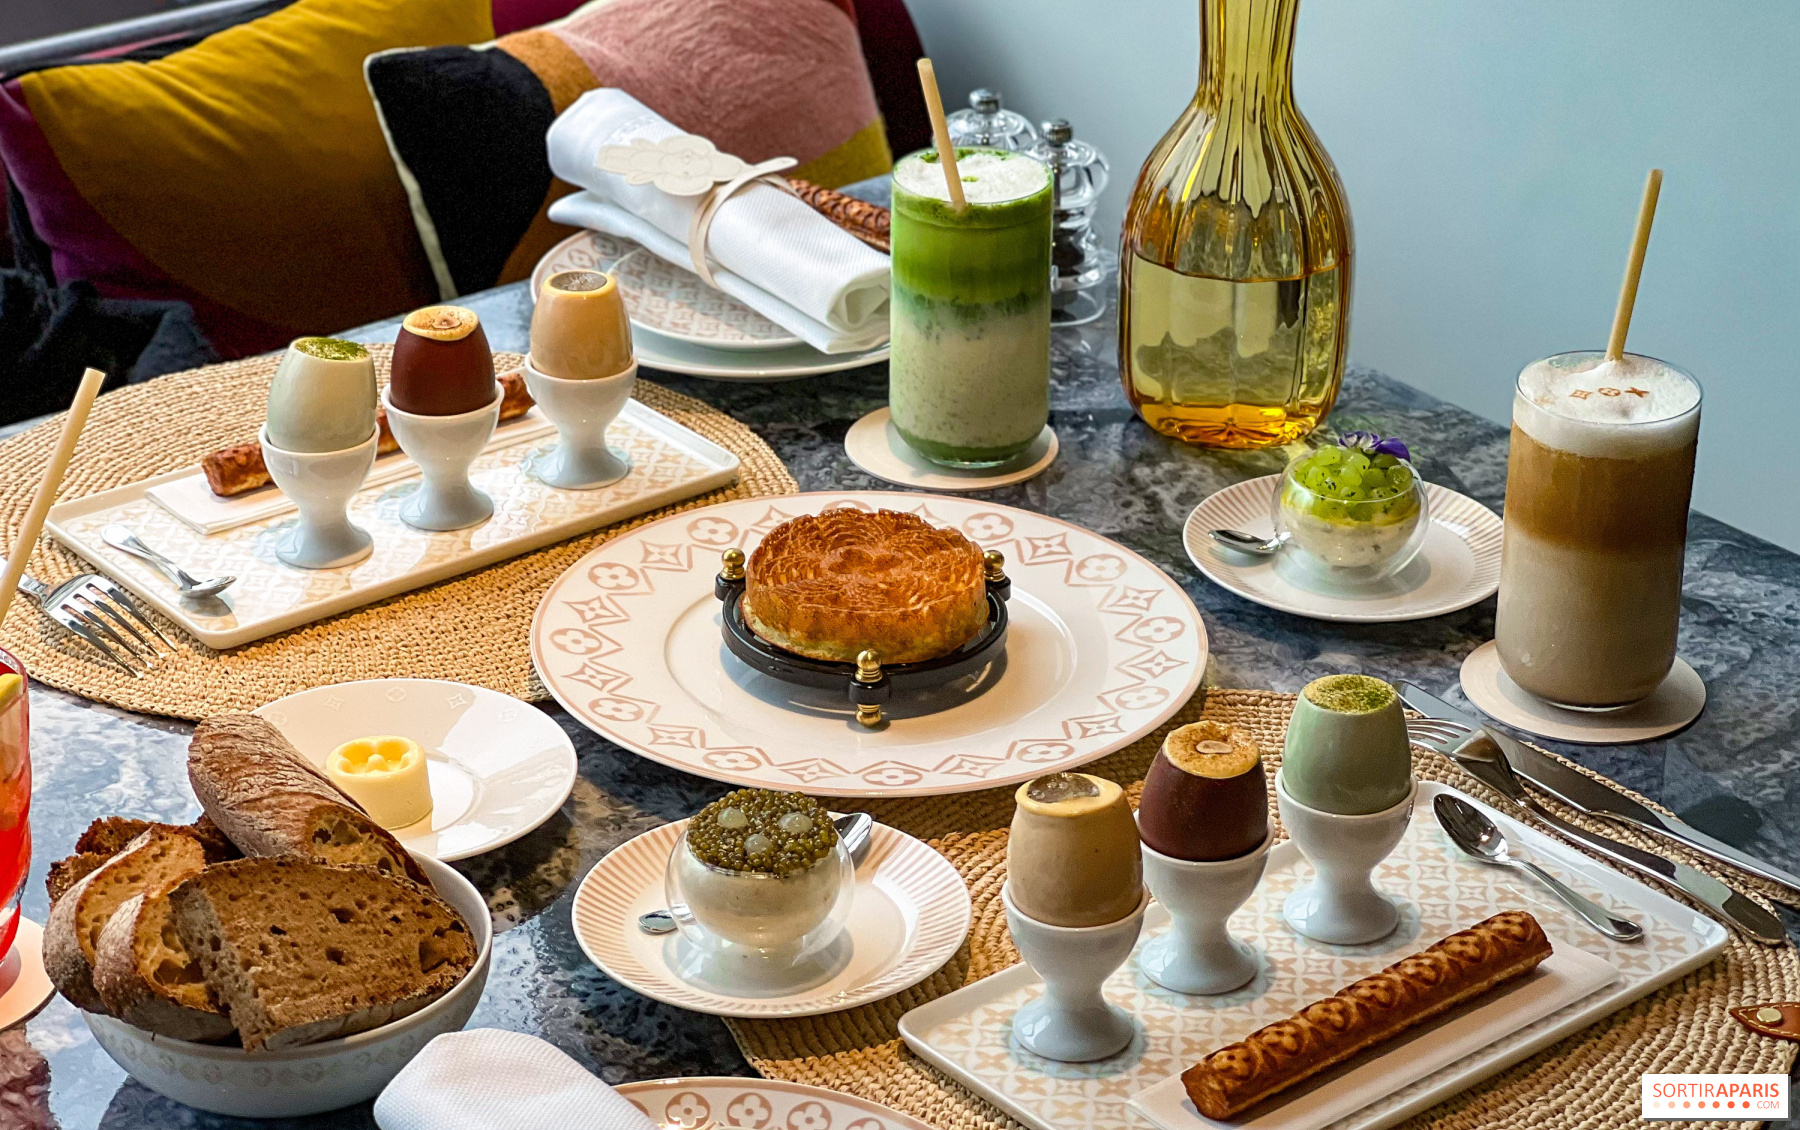 LV Dream: the Café Maxime Frédéric at Louis Vuitton unveils its new  savoury menu 